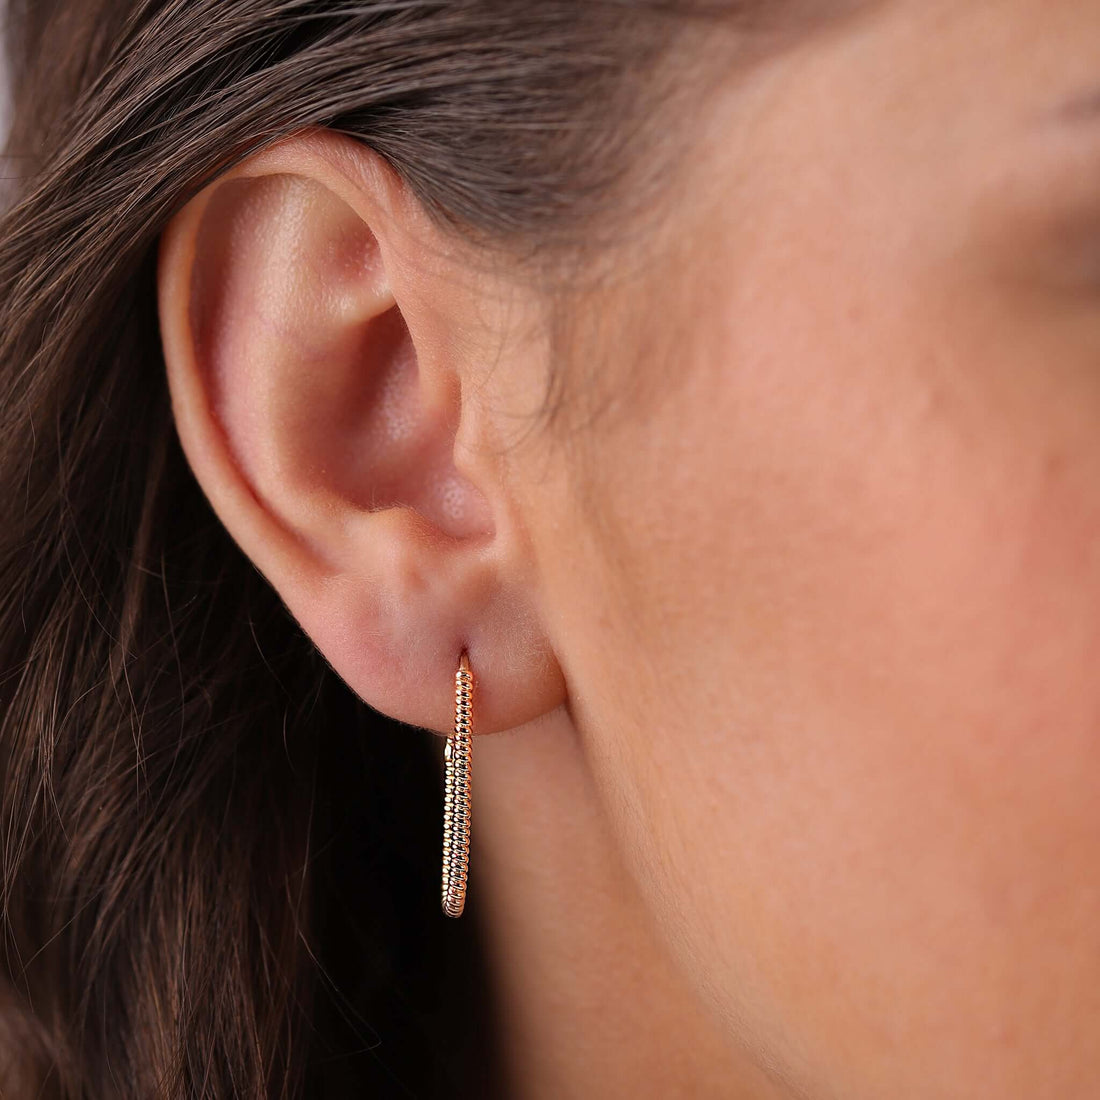 Jewelry Twist Hoops | Medium Gold Earrings | 14K - Diamond earrings Zengoda Shop online from Artisan Brands